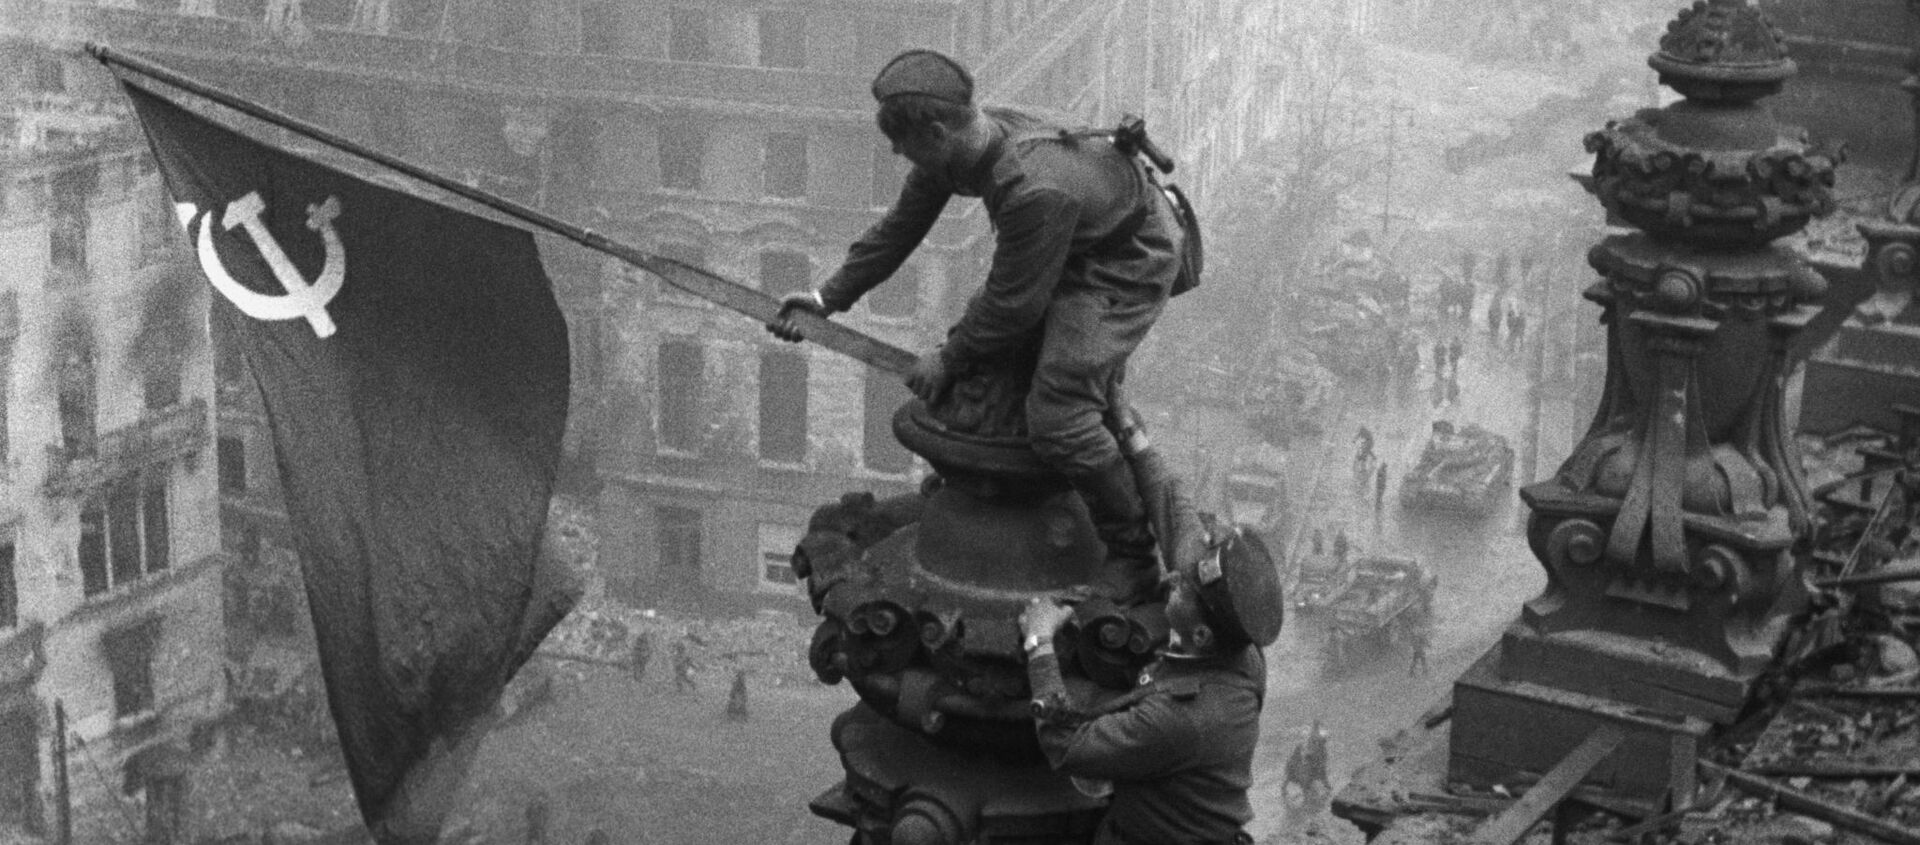 Знамя Победы над Рейхстагом в Берлине, 1945 год - Sputnik Latvija, 1920, 21.11.2020